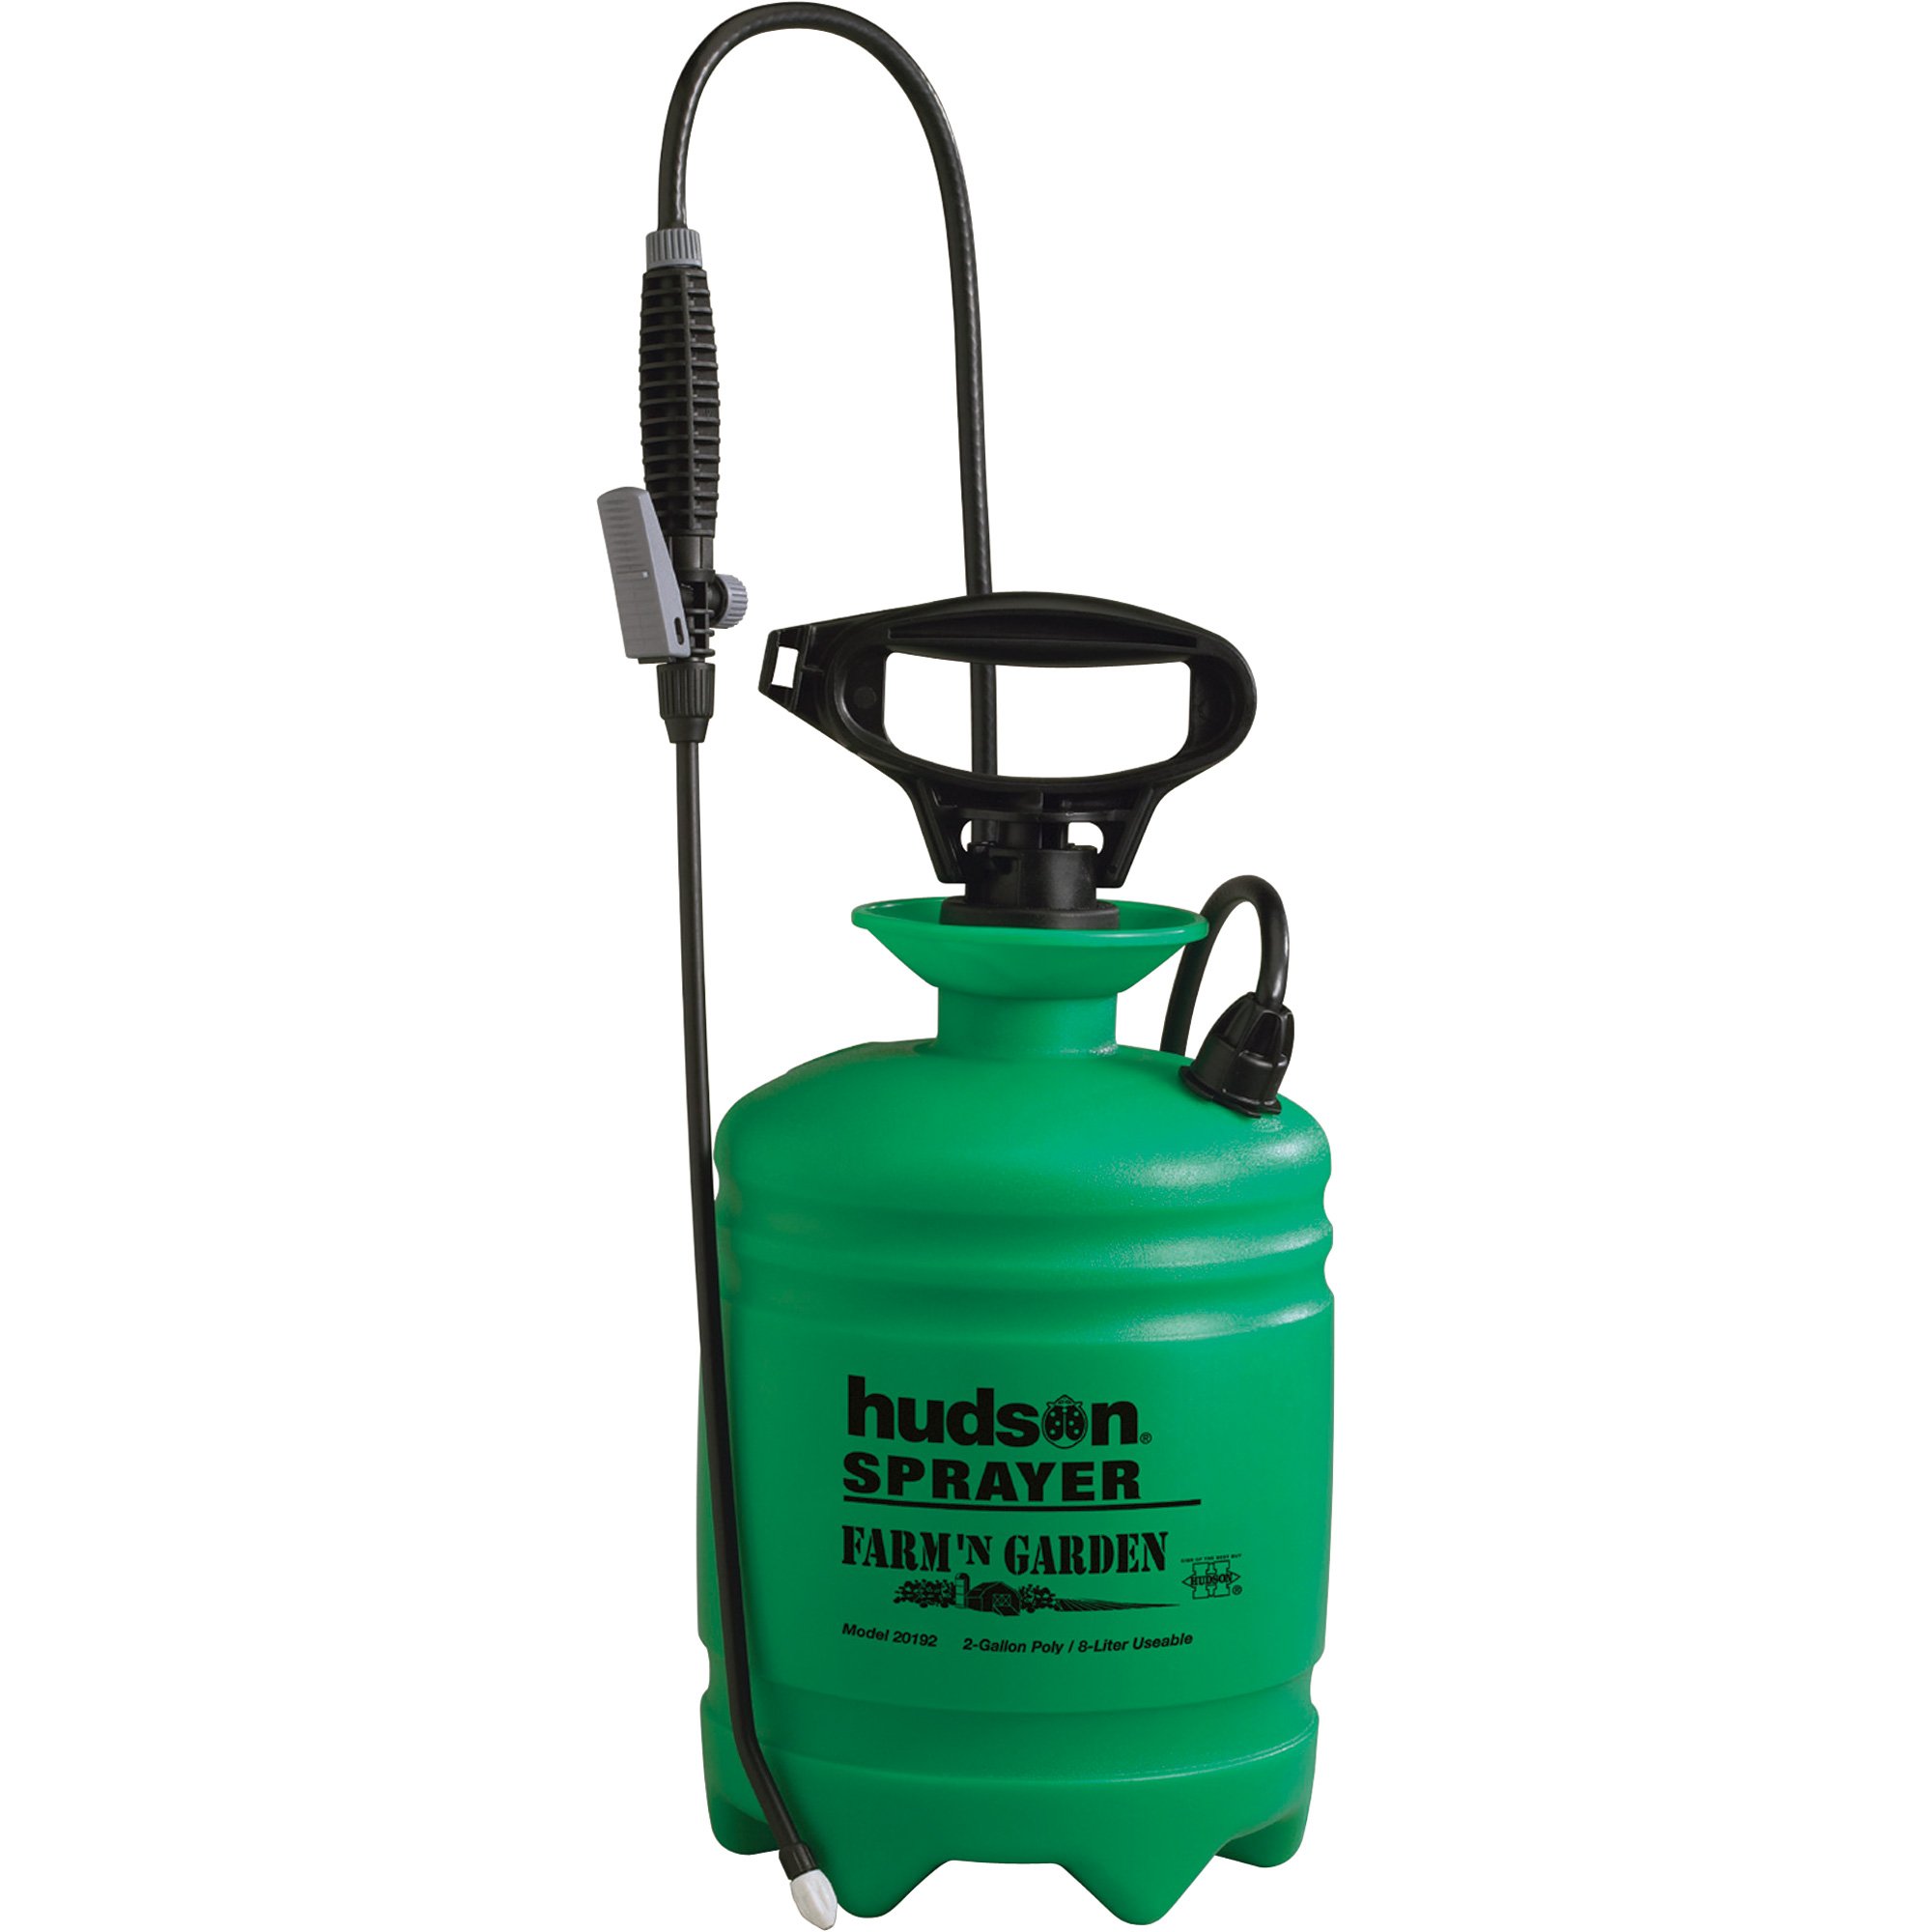 Hudson Farm and Garden Portable Sprayer — 2-Gallon Capacity, 40 PSI, Model#  60192